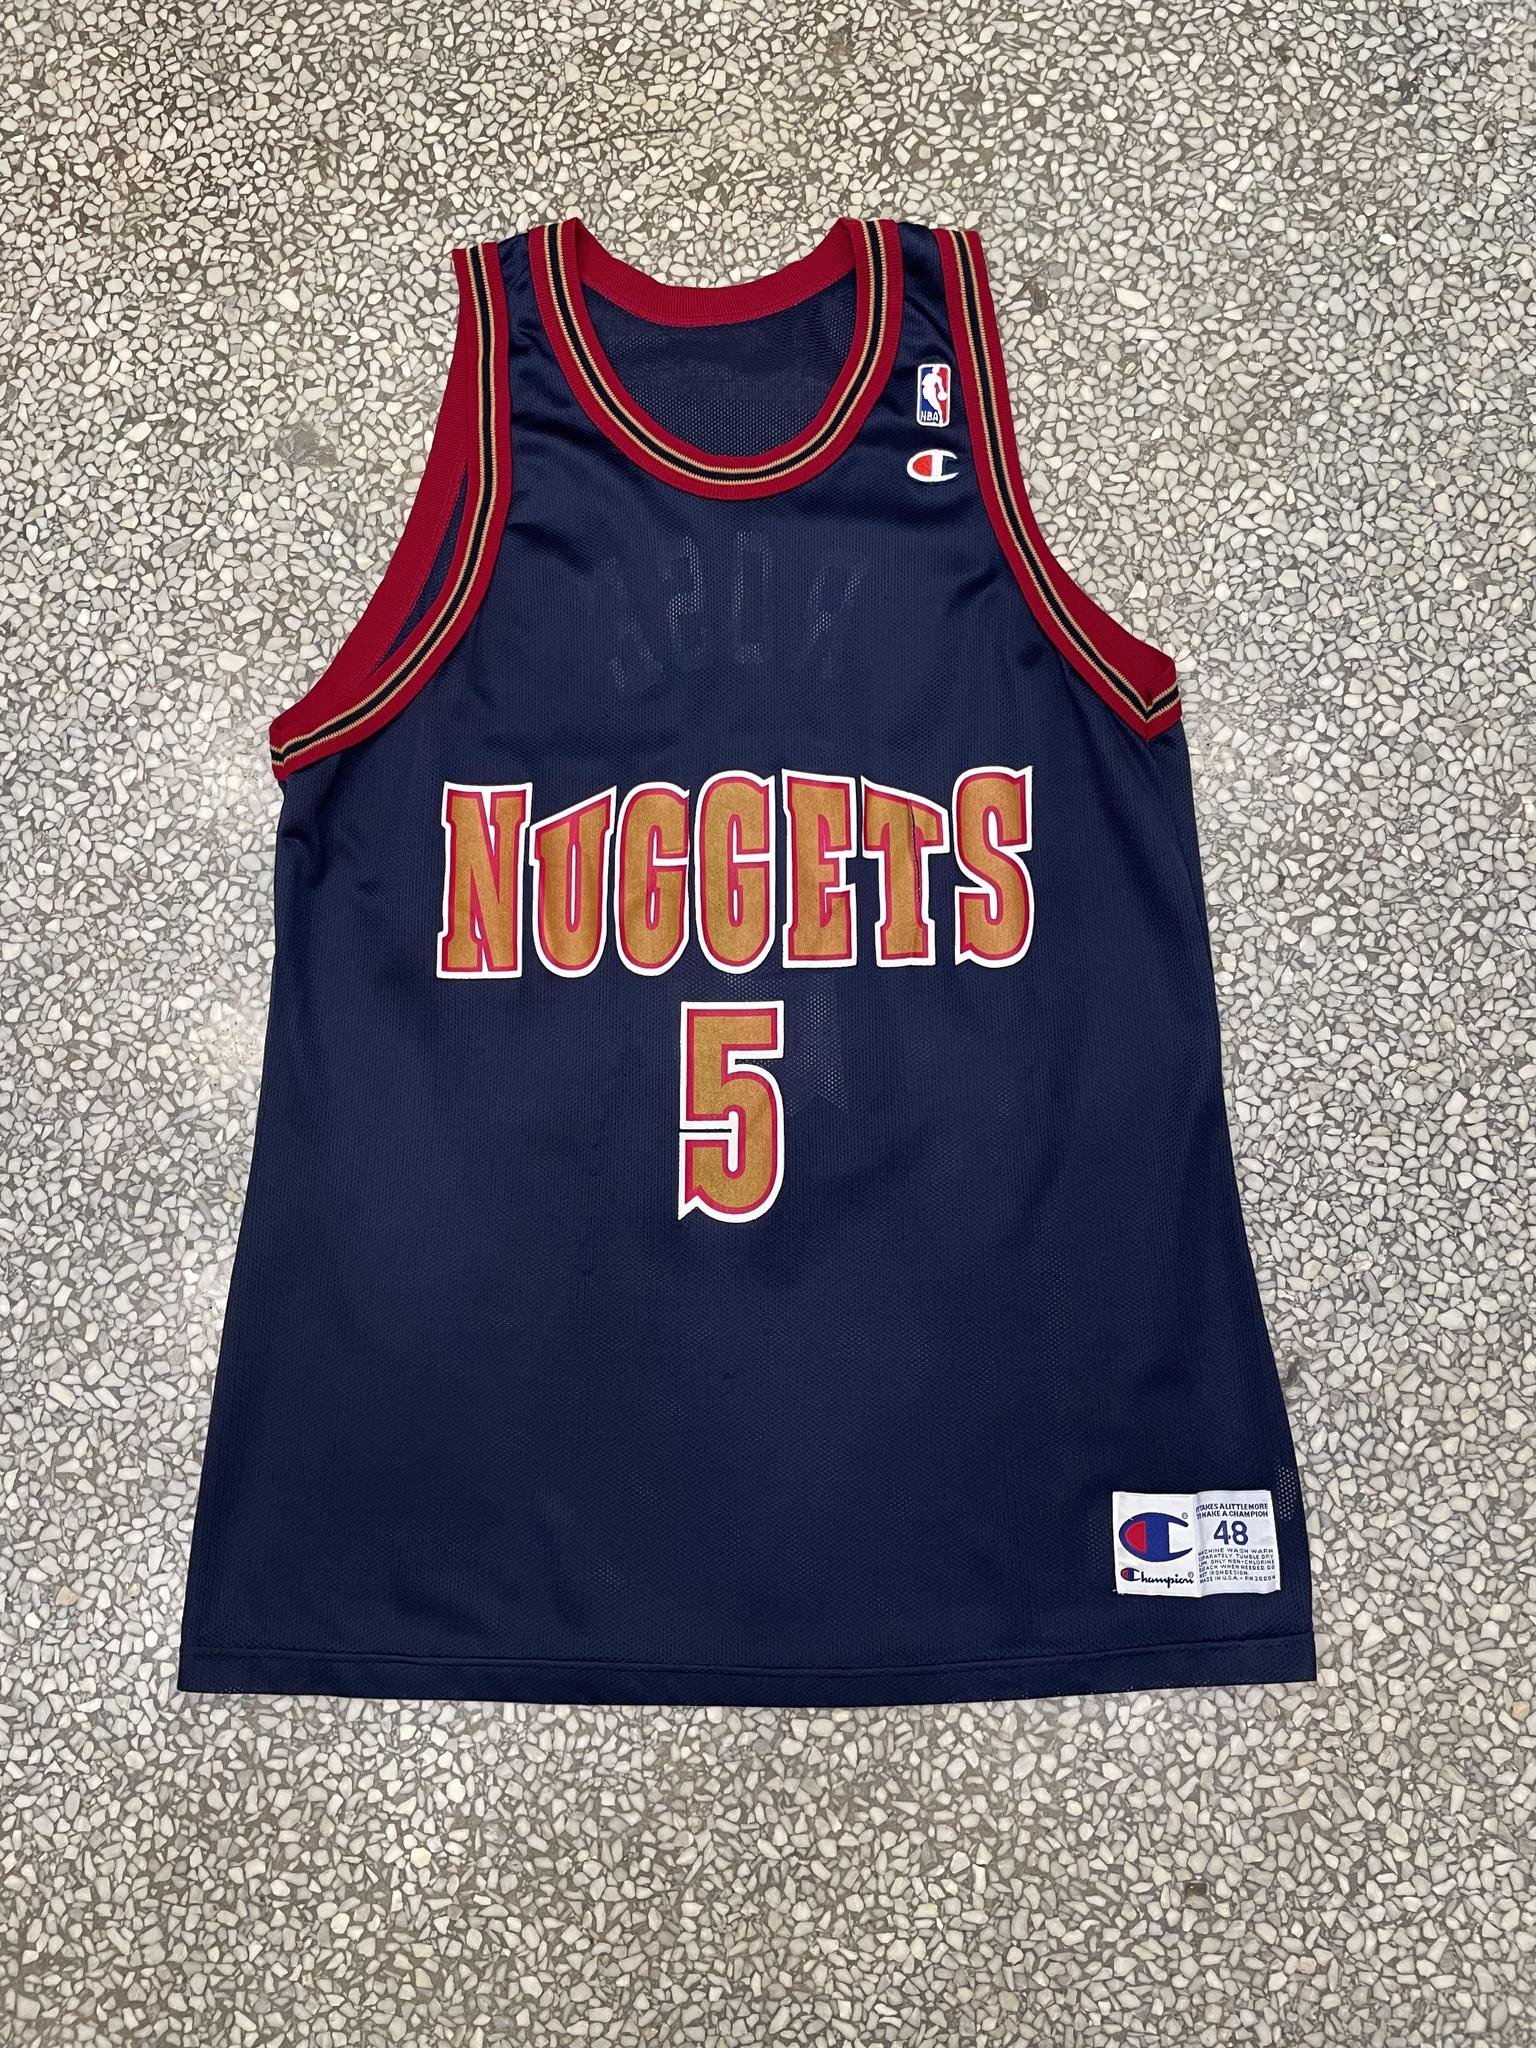 Denver Throwback Basketball Jersey by HOOPR – HOOPR Store